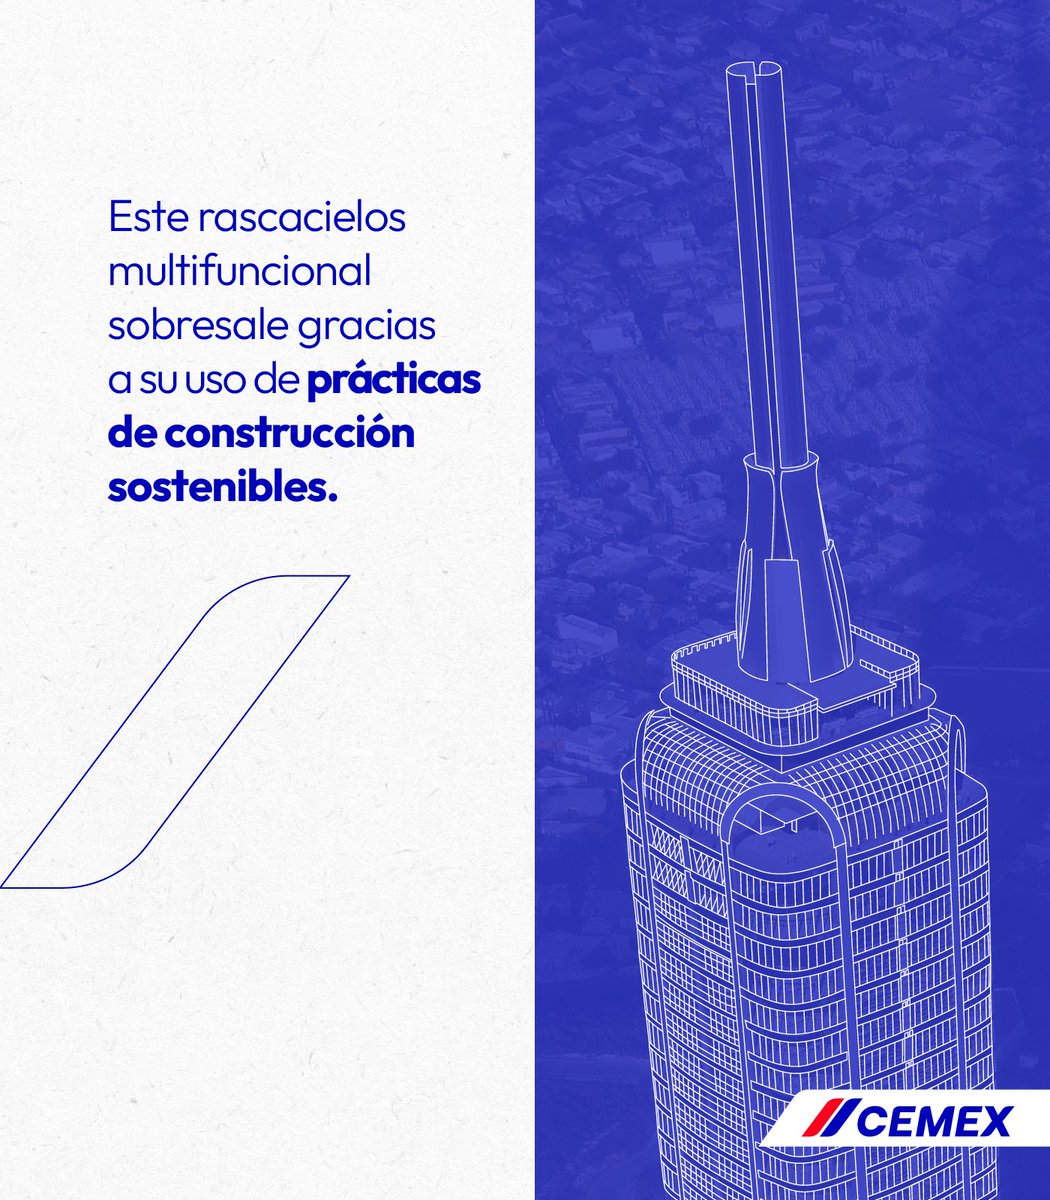 🏙 La Torre Rise prioriza la innovación y sostenibilidad al reducir el uso de agua, eliminar plásticos, gestionar residuos y utilizar nuestro concreto #Vertua, con el fin de convertirse en la torre con más certificaciones ambientales en México.Conoce más: cmx.to/3tMDfax